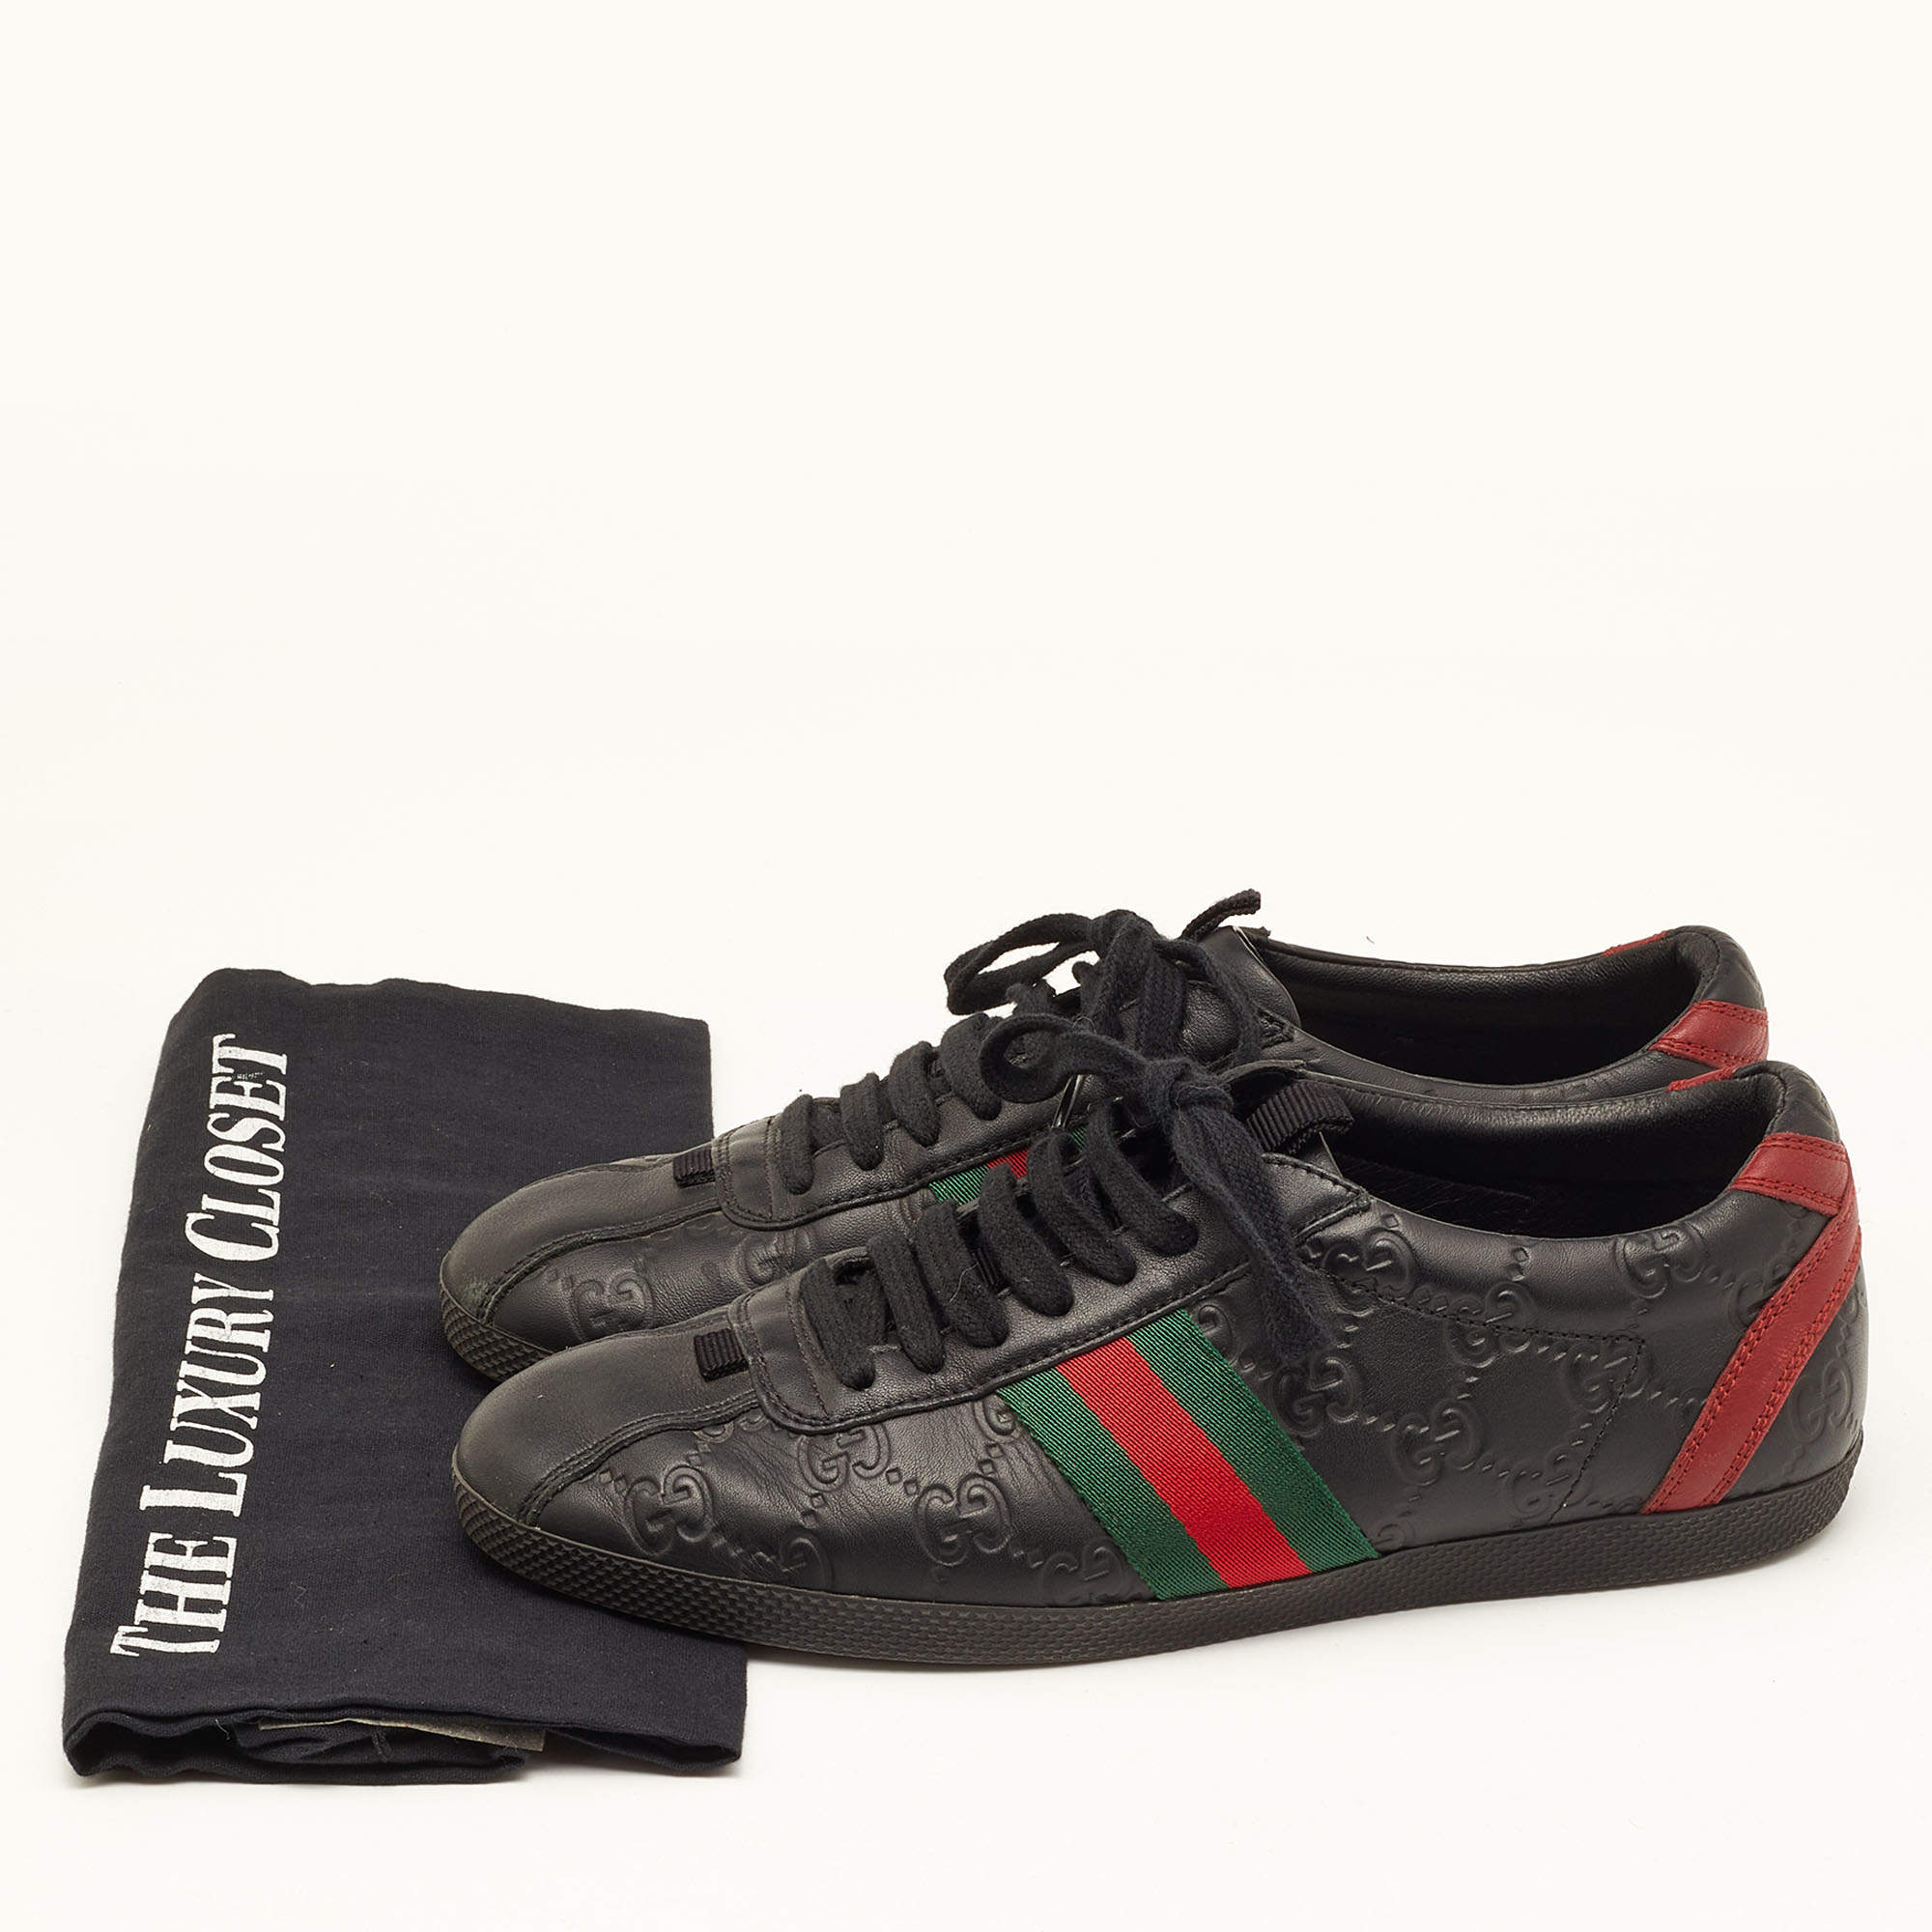 Gucci Black Guccissima Leather Web Ace Sneakers Size 37 Gucci